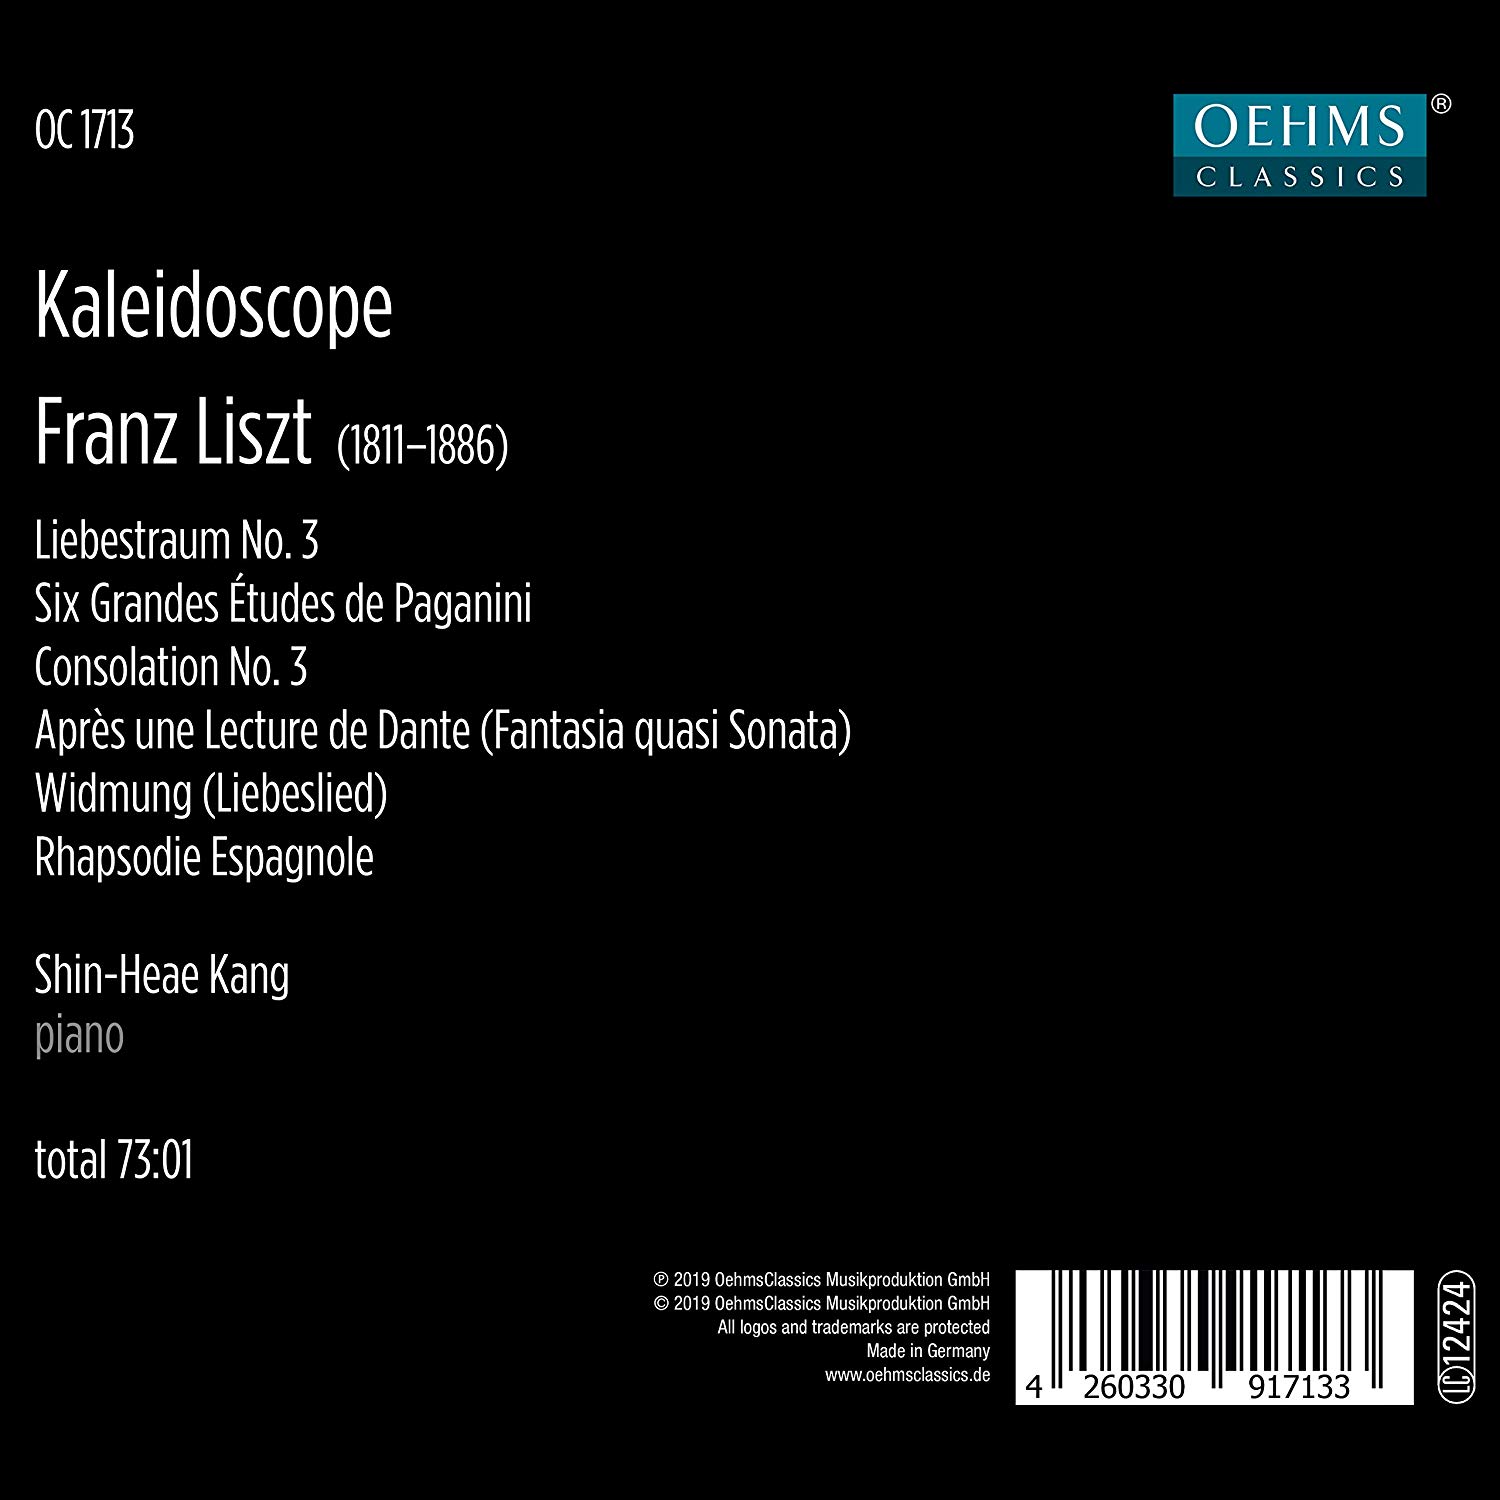 강신혜 - 리스트: 피아노 작품집 (Liszt: Kaleidoscope)